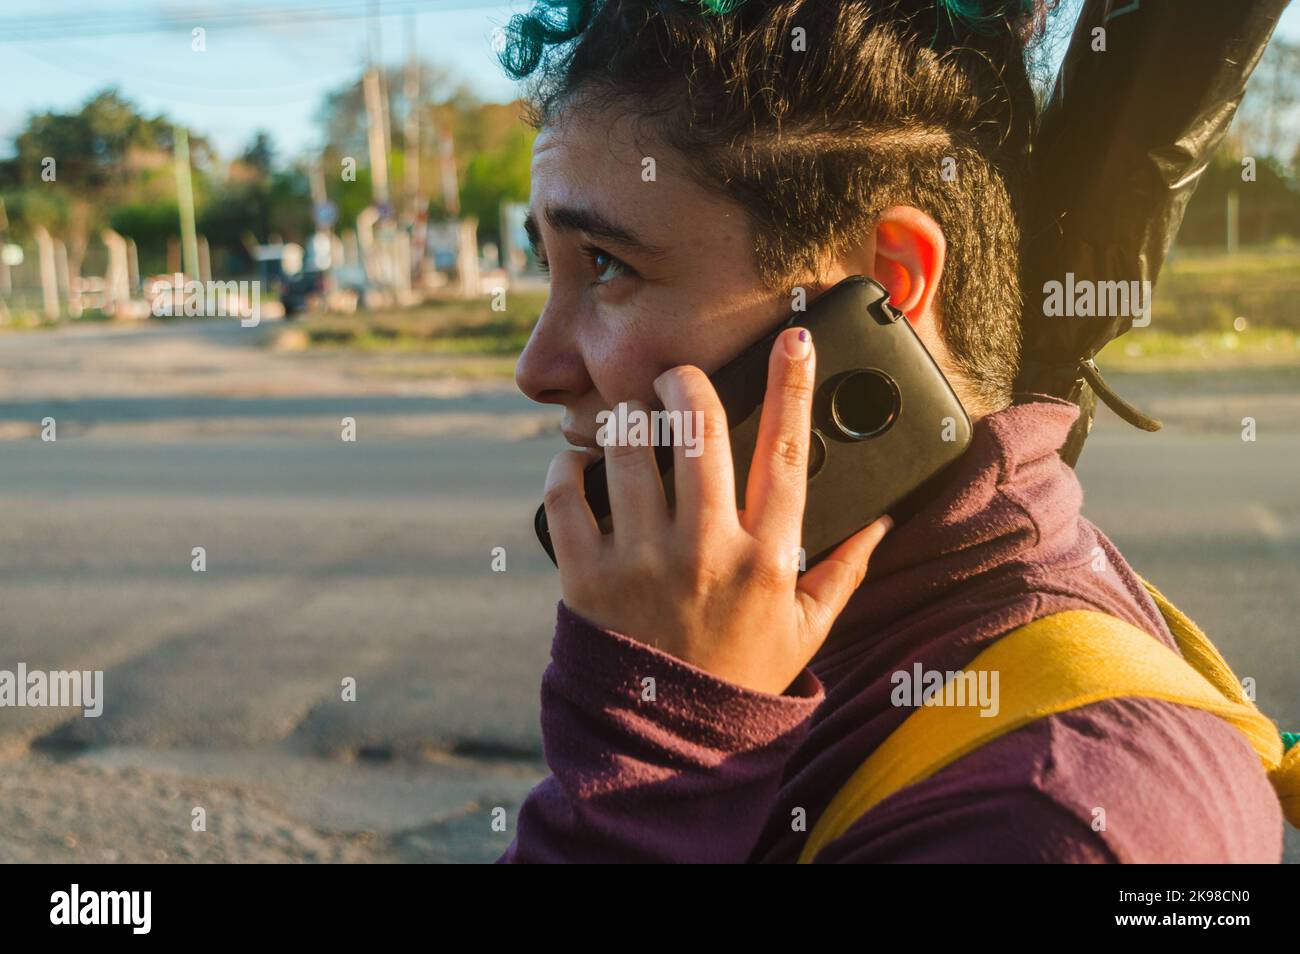 Nahaufnahme des Profils einer jungen frau aus dem lateinischen Kaukasus, mit rasierten Haaren, die im Freien telefoniert und am Straßenrand läuft Stockfoto